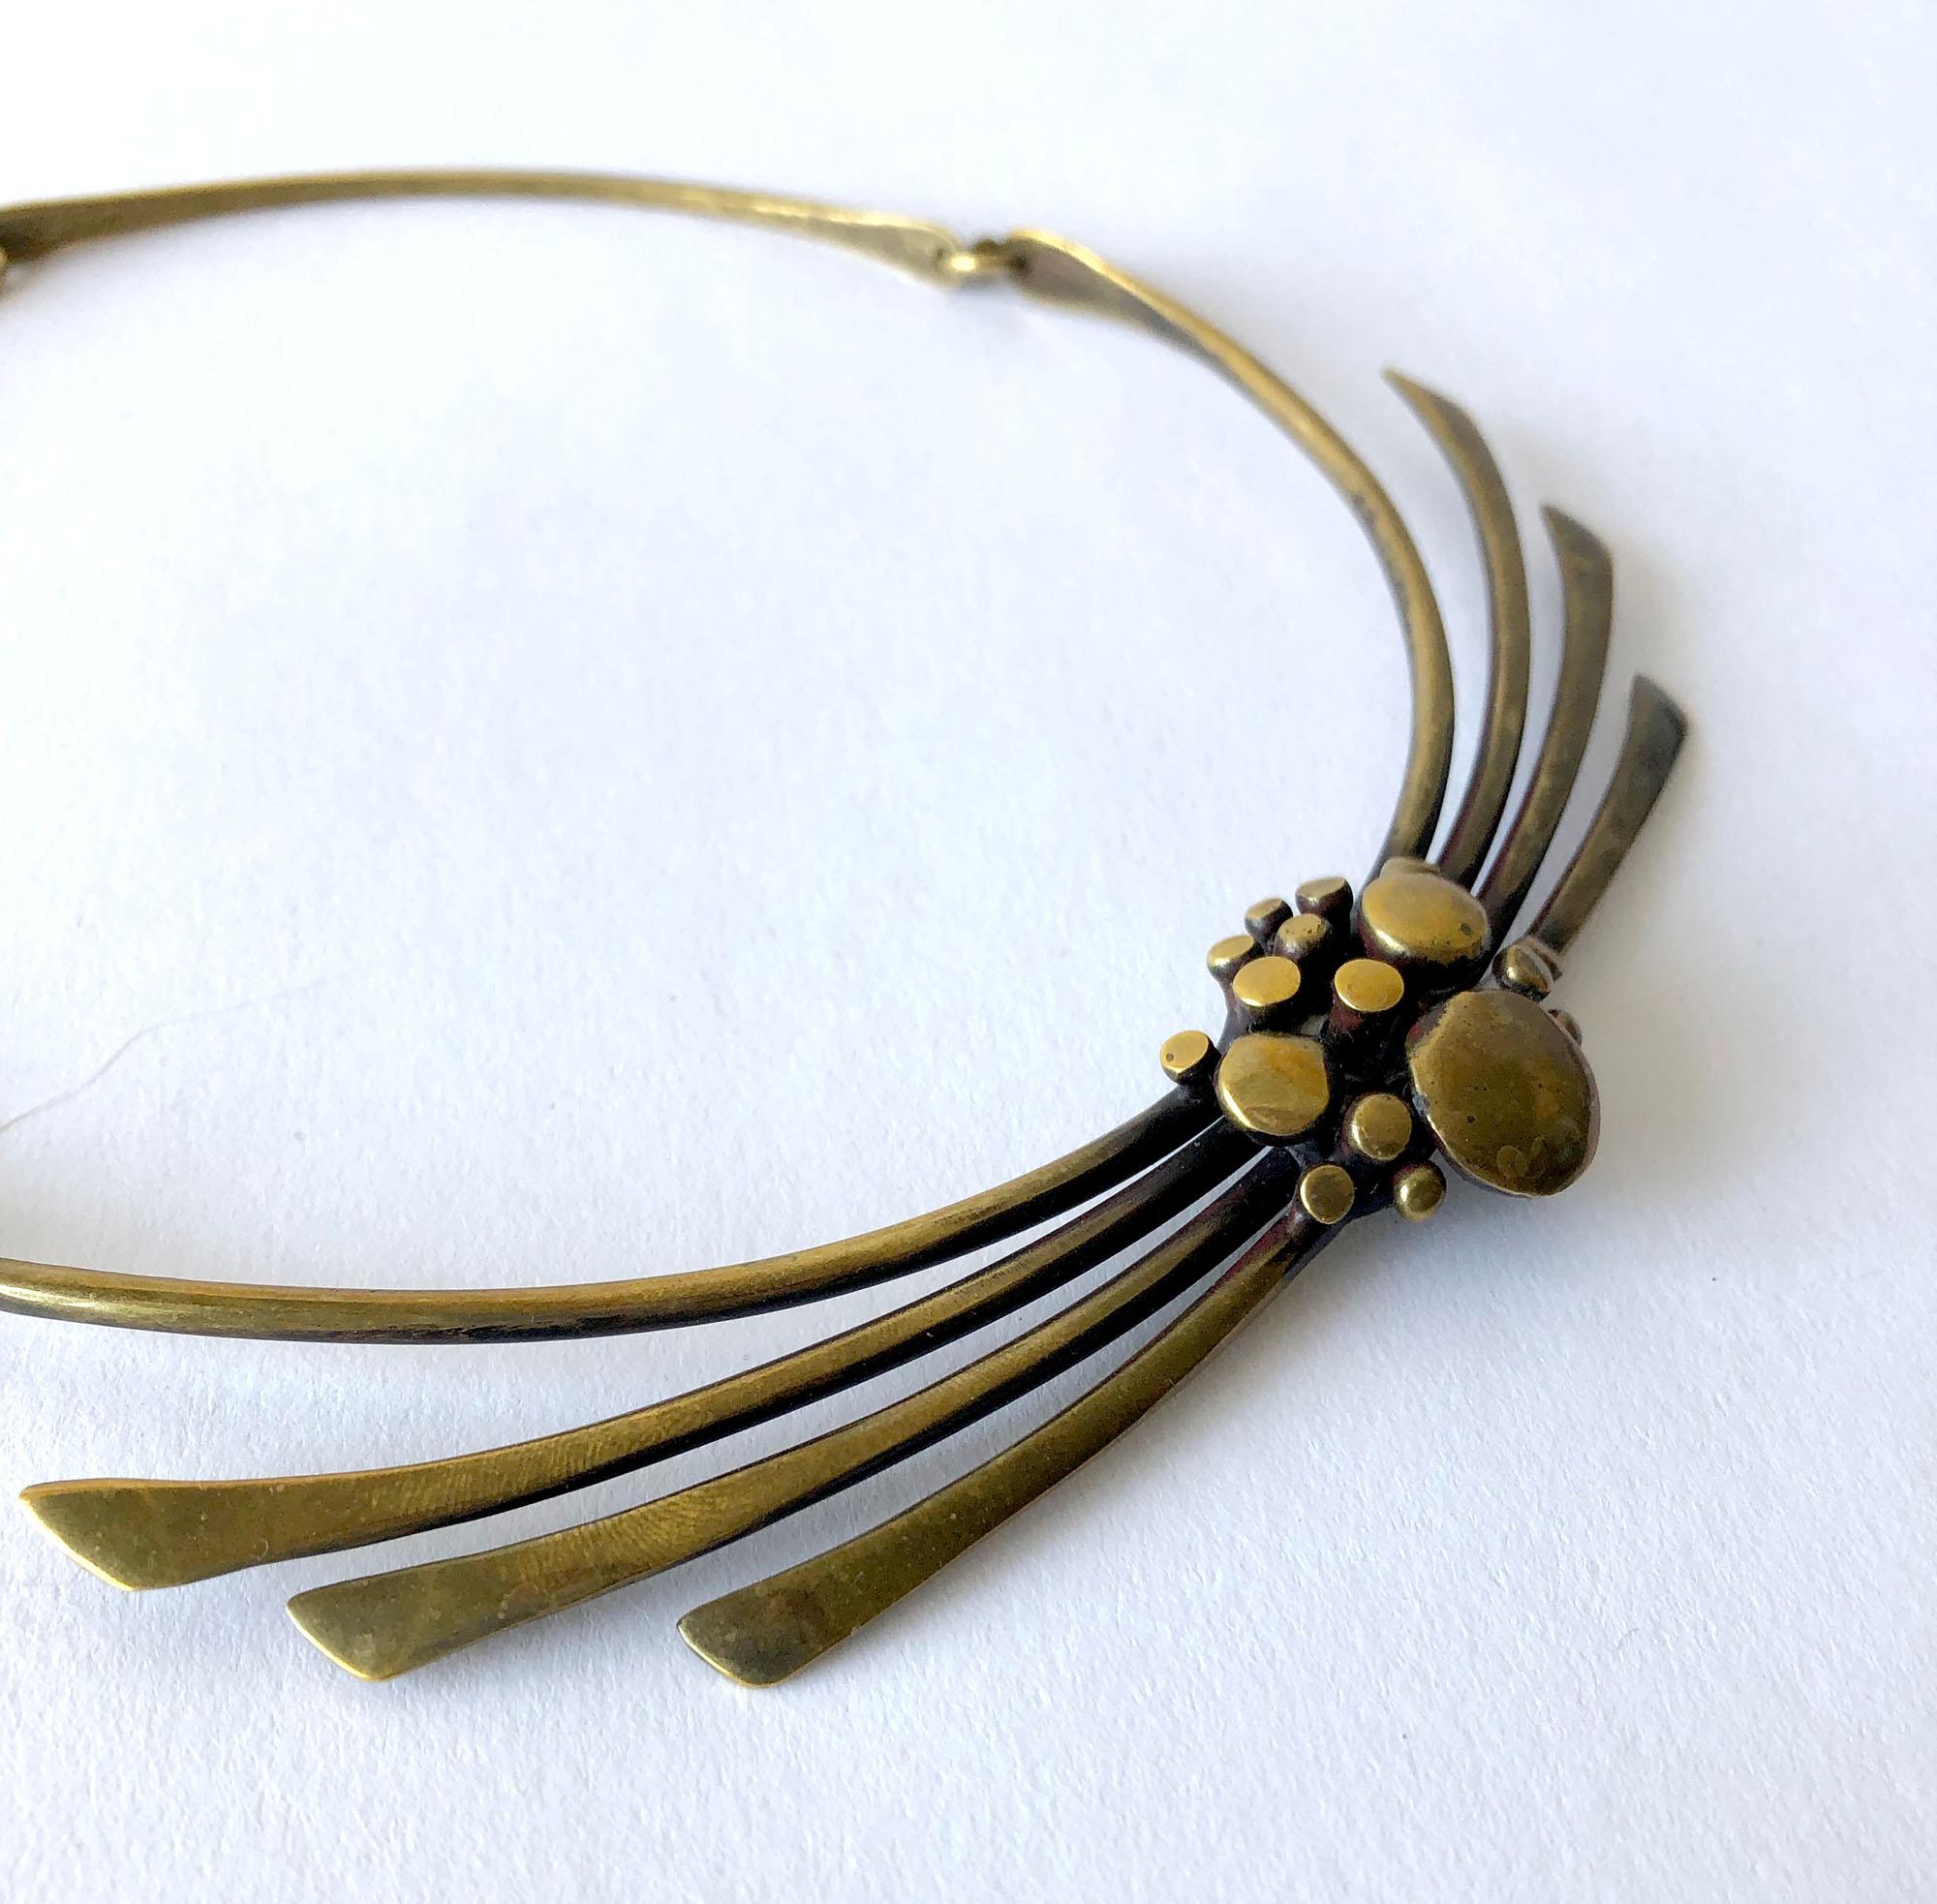 collier en bronze organique moderniste des années 1970 créé par Jack Boyd de San Diego, Californie.  Le collier mesure 17,5